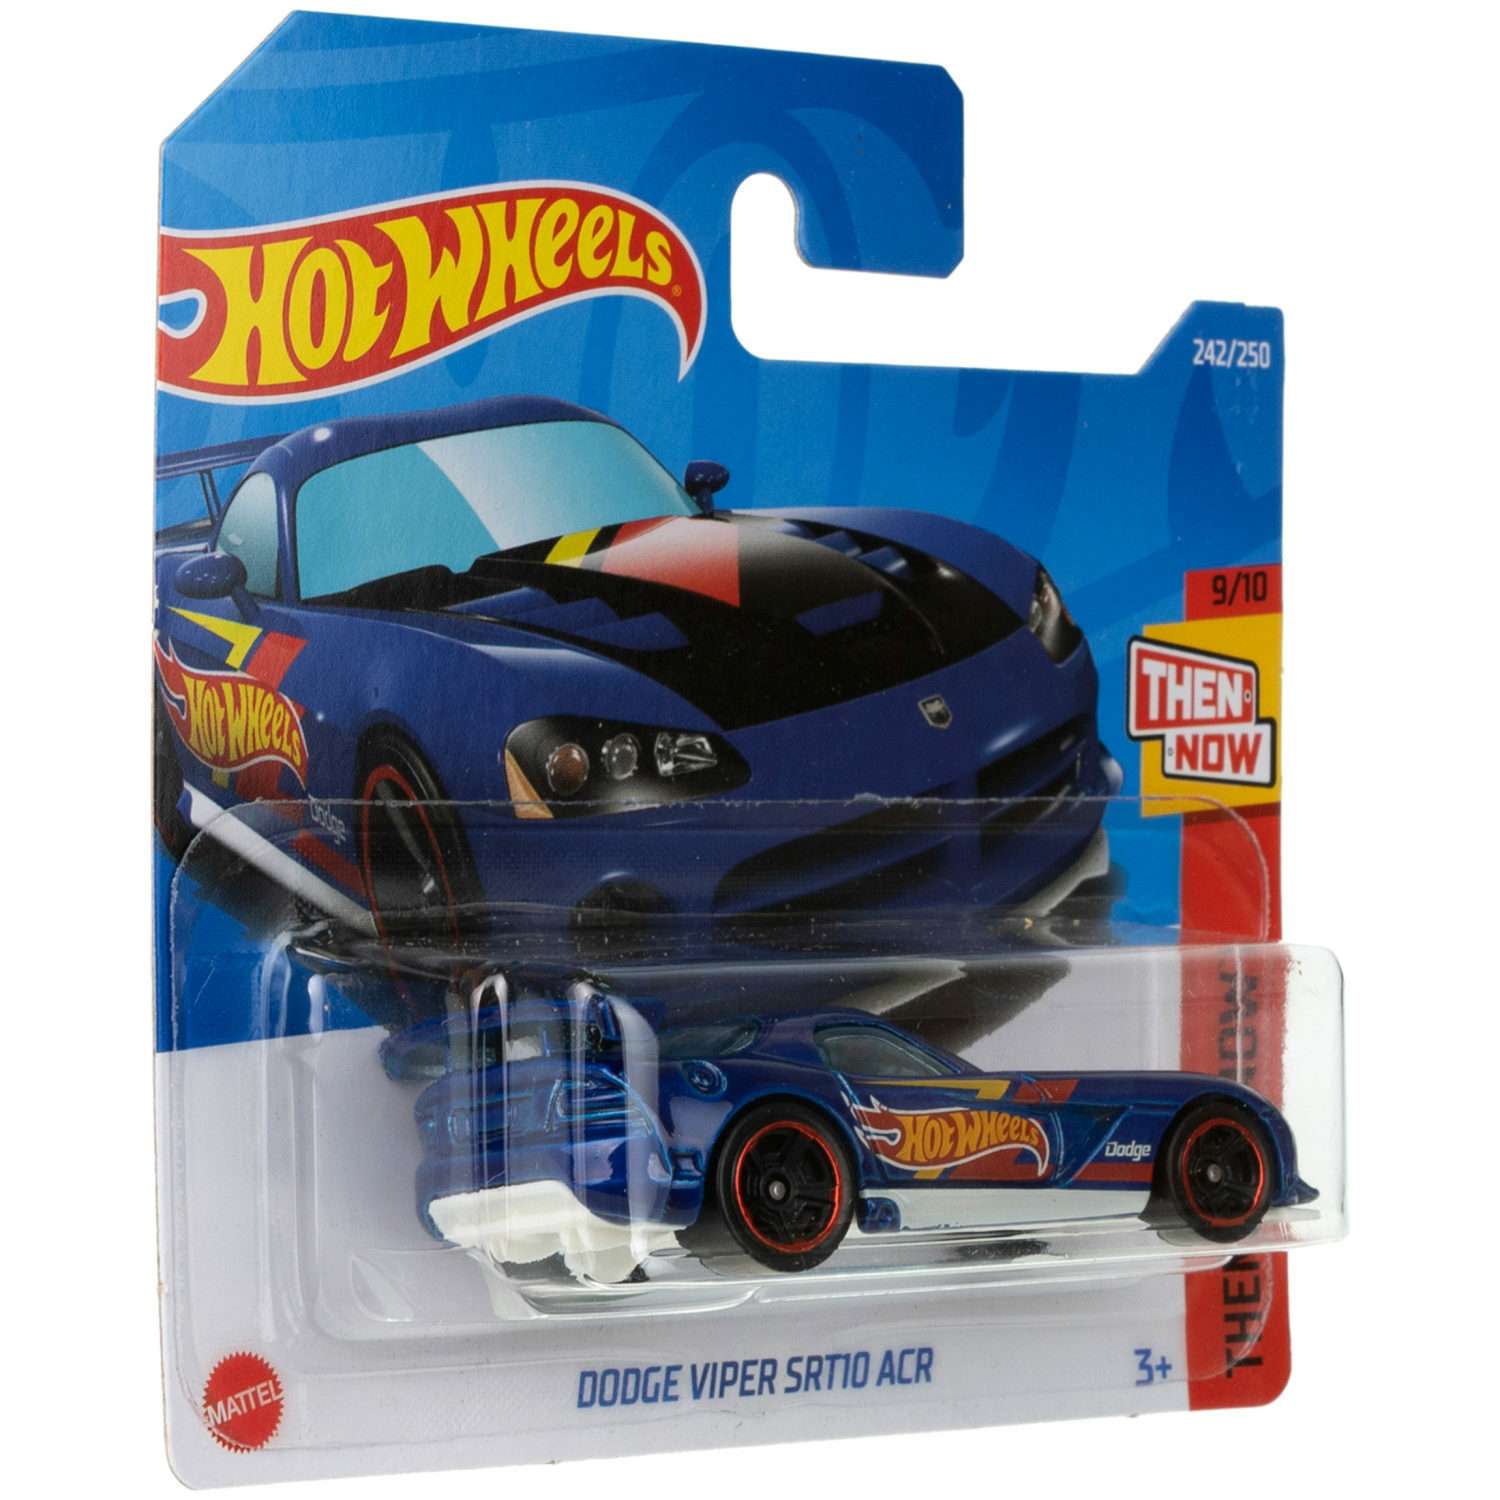 Коллекционная машинка Hot Wheels Dodge viper srt10 acr 5785-116 - фото 5